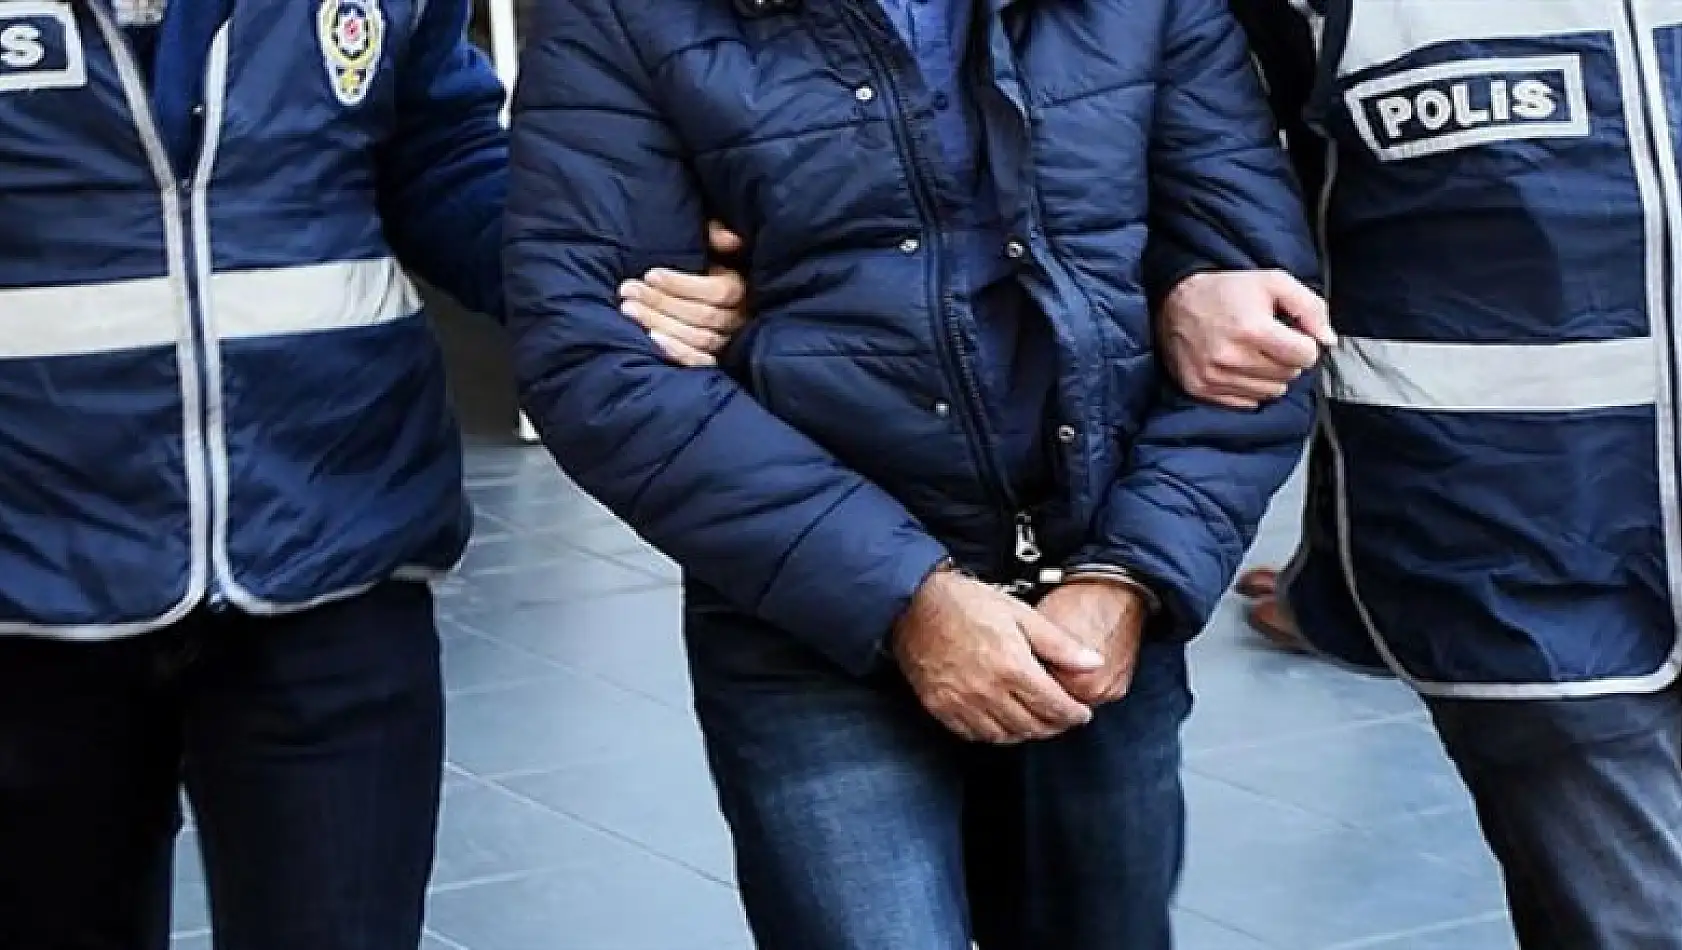 Konya'da Kaldığı otel odasında uyuşturucuyla yakalandı